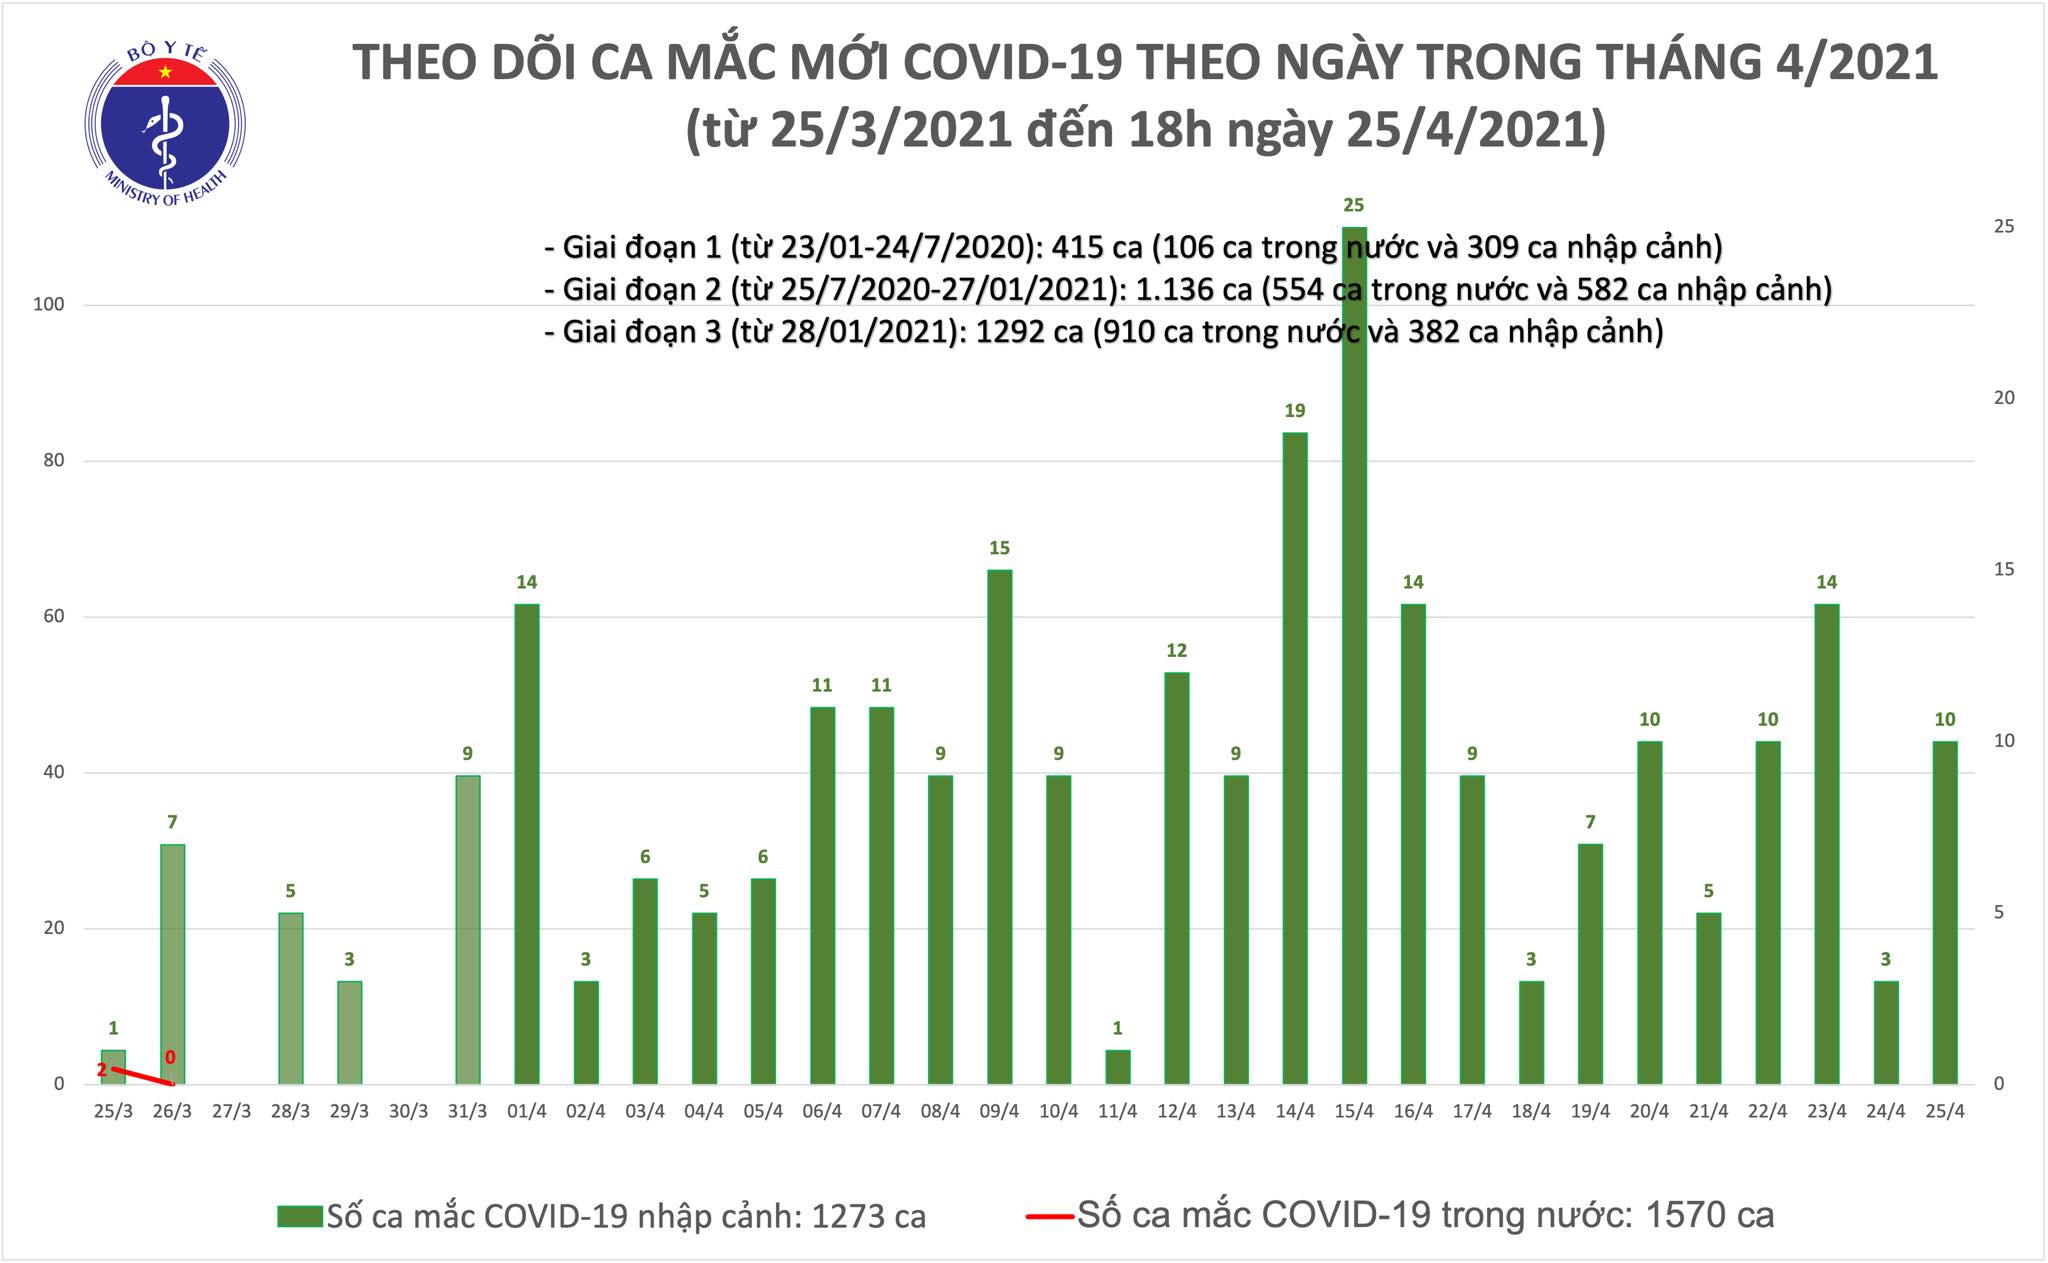 Chiều 25/4: Việt Nam thêm 10 ca mắc COVID-19, thế giới đã có trên 147 triệu ca